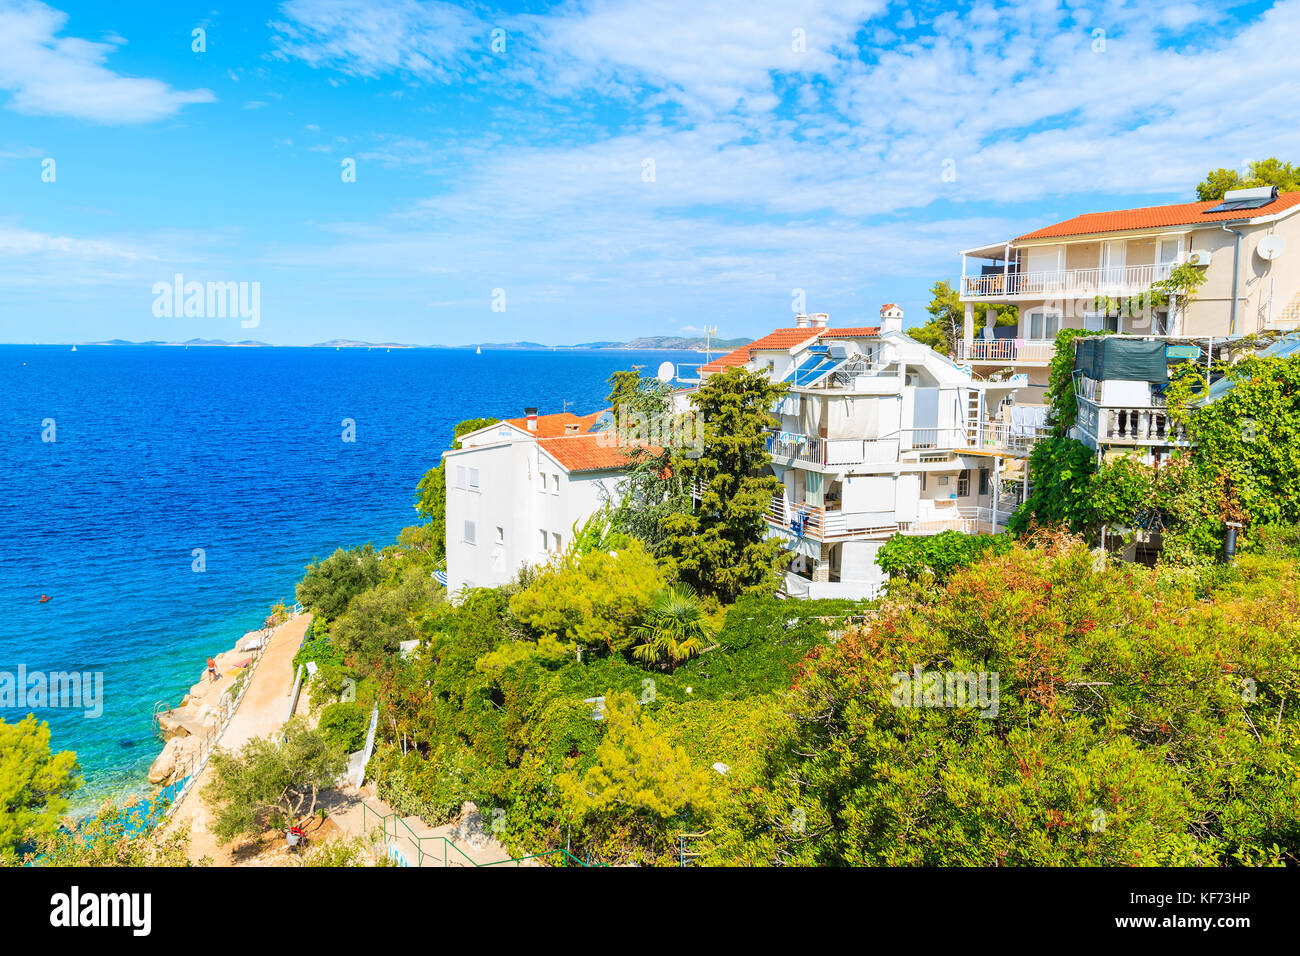 Holiday houses with apartments on sea coast near Primosten town, Dalmatia, Croatia Stock Photo